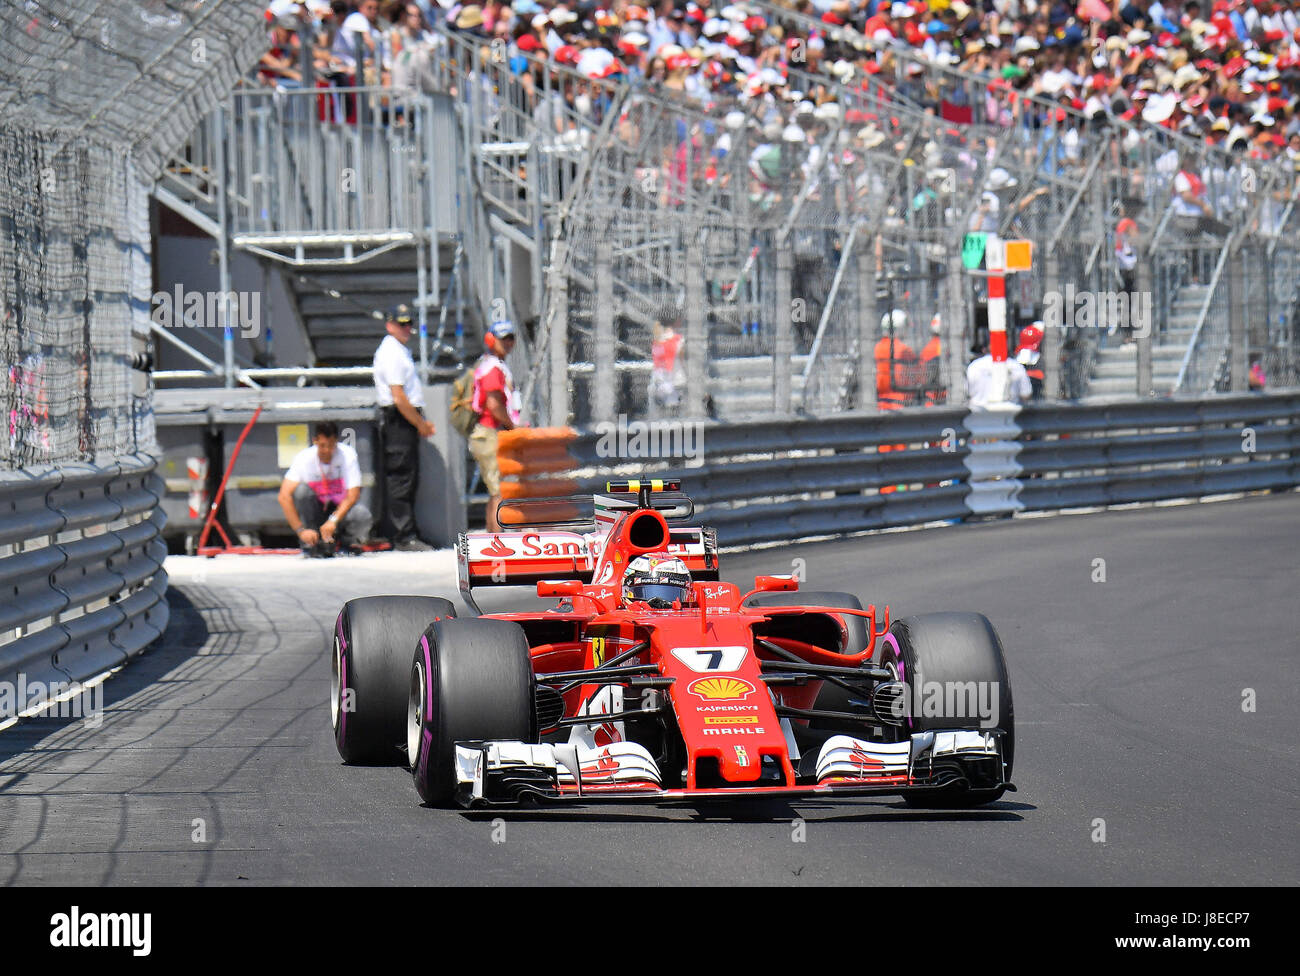 Mónaco. 28 de mayo de 2017. Ferrari Kimi Raikkonen de Finlandia se ve durante la carrera del Grand Prix de Fórmula Uno de Mónaco en Mónaco, el 28 de mayo de 2017. Crédito: Michael Alesi/Xinhua/Alamy Live News Foto de stock